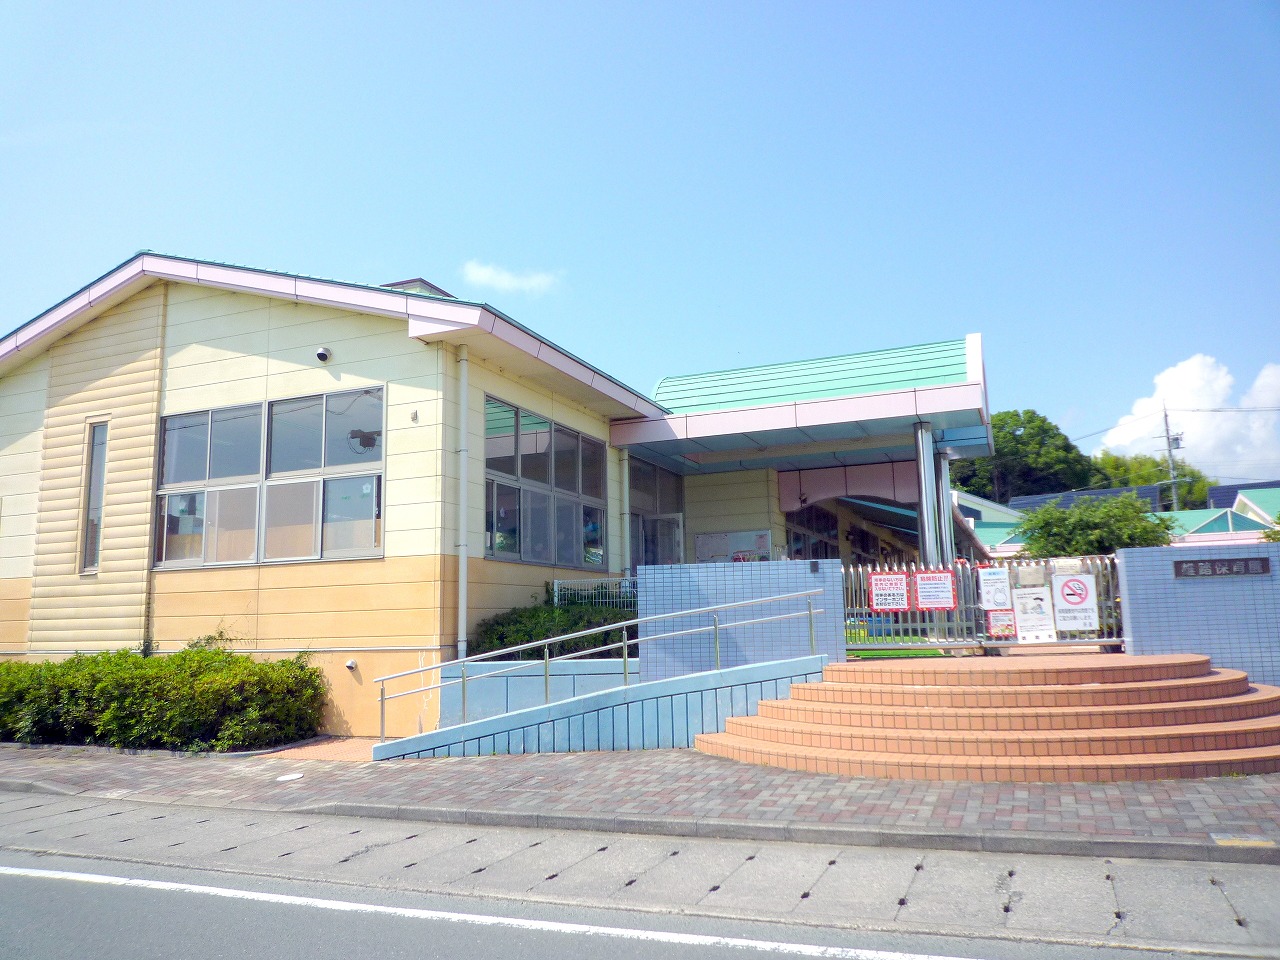 kindergarten ・ Nursery. Hamamatsu Municipal Yuto nursery school (kindergarten ・ 526m to the nursery)